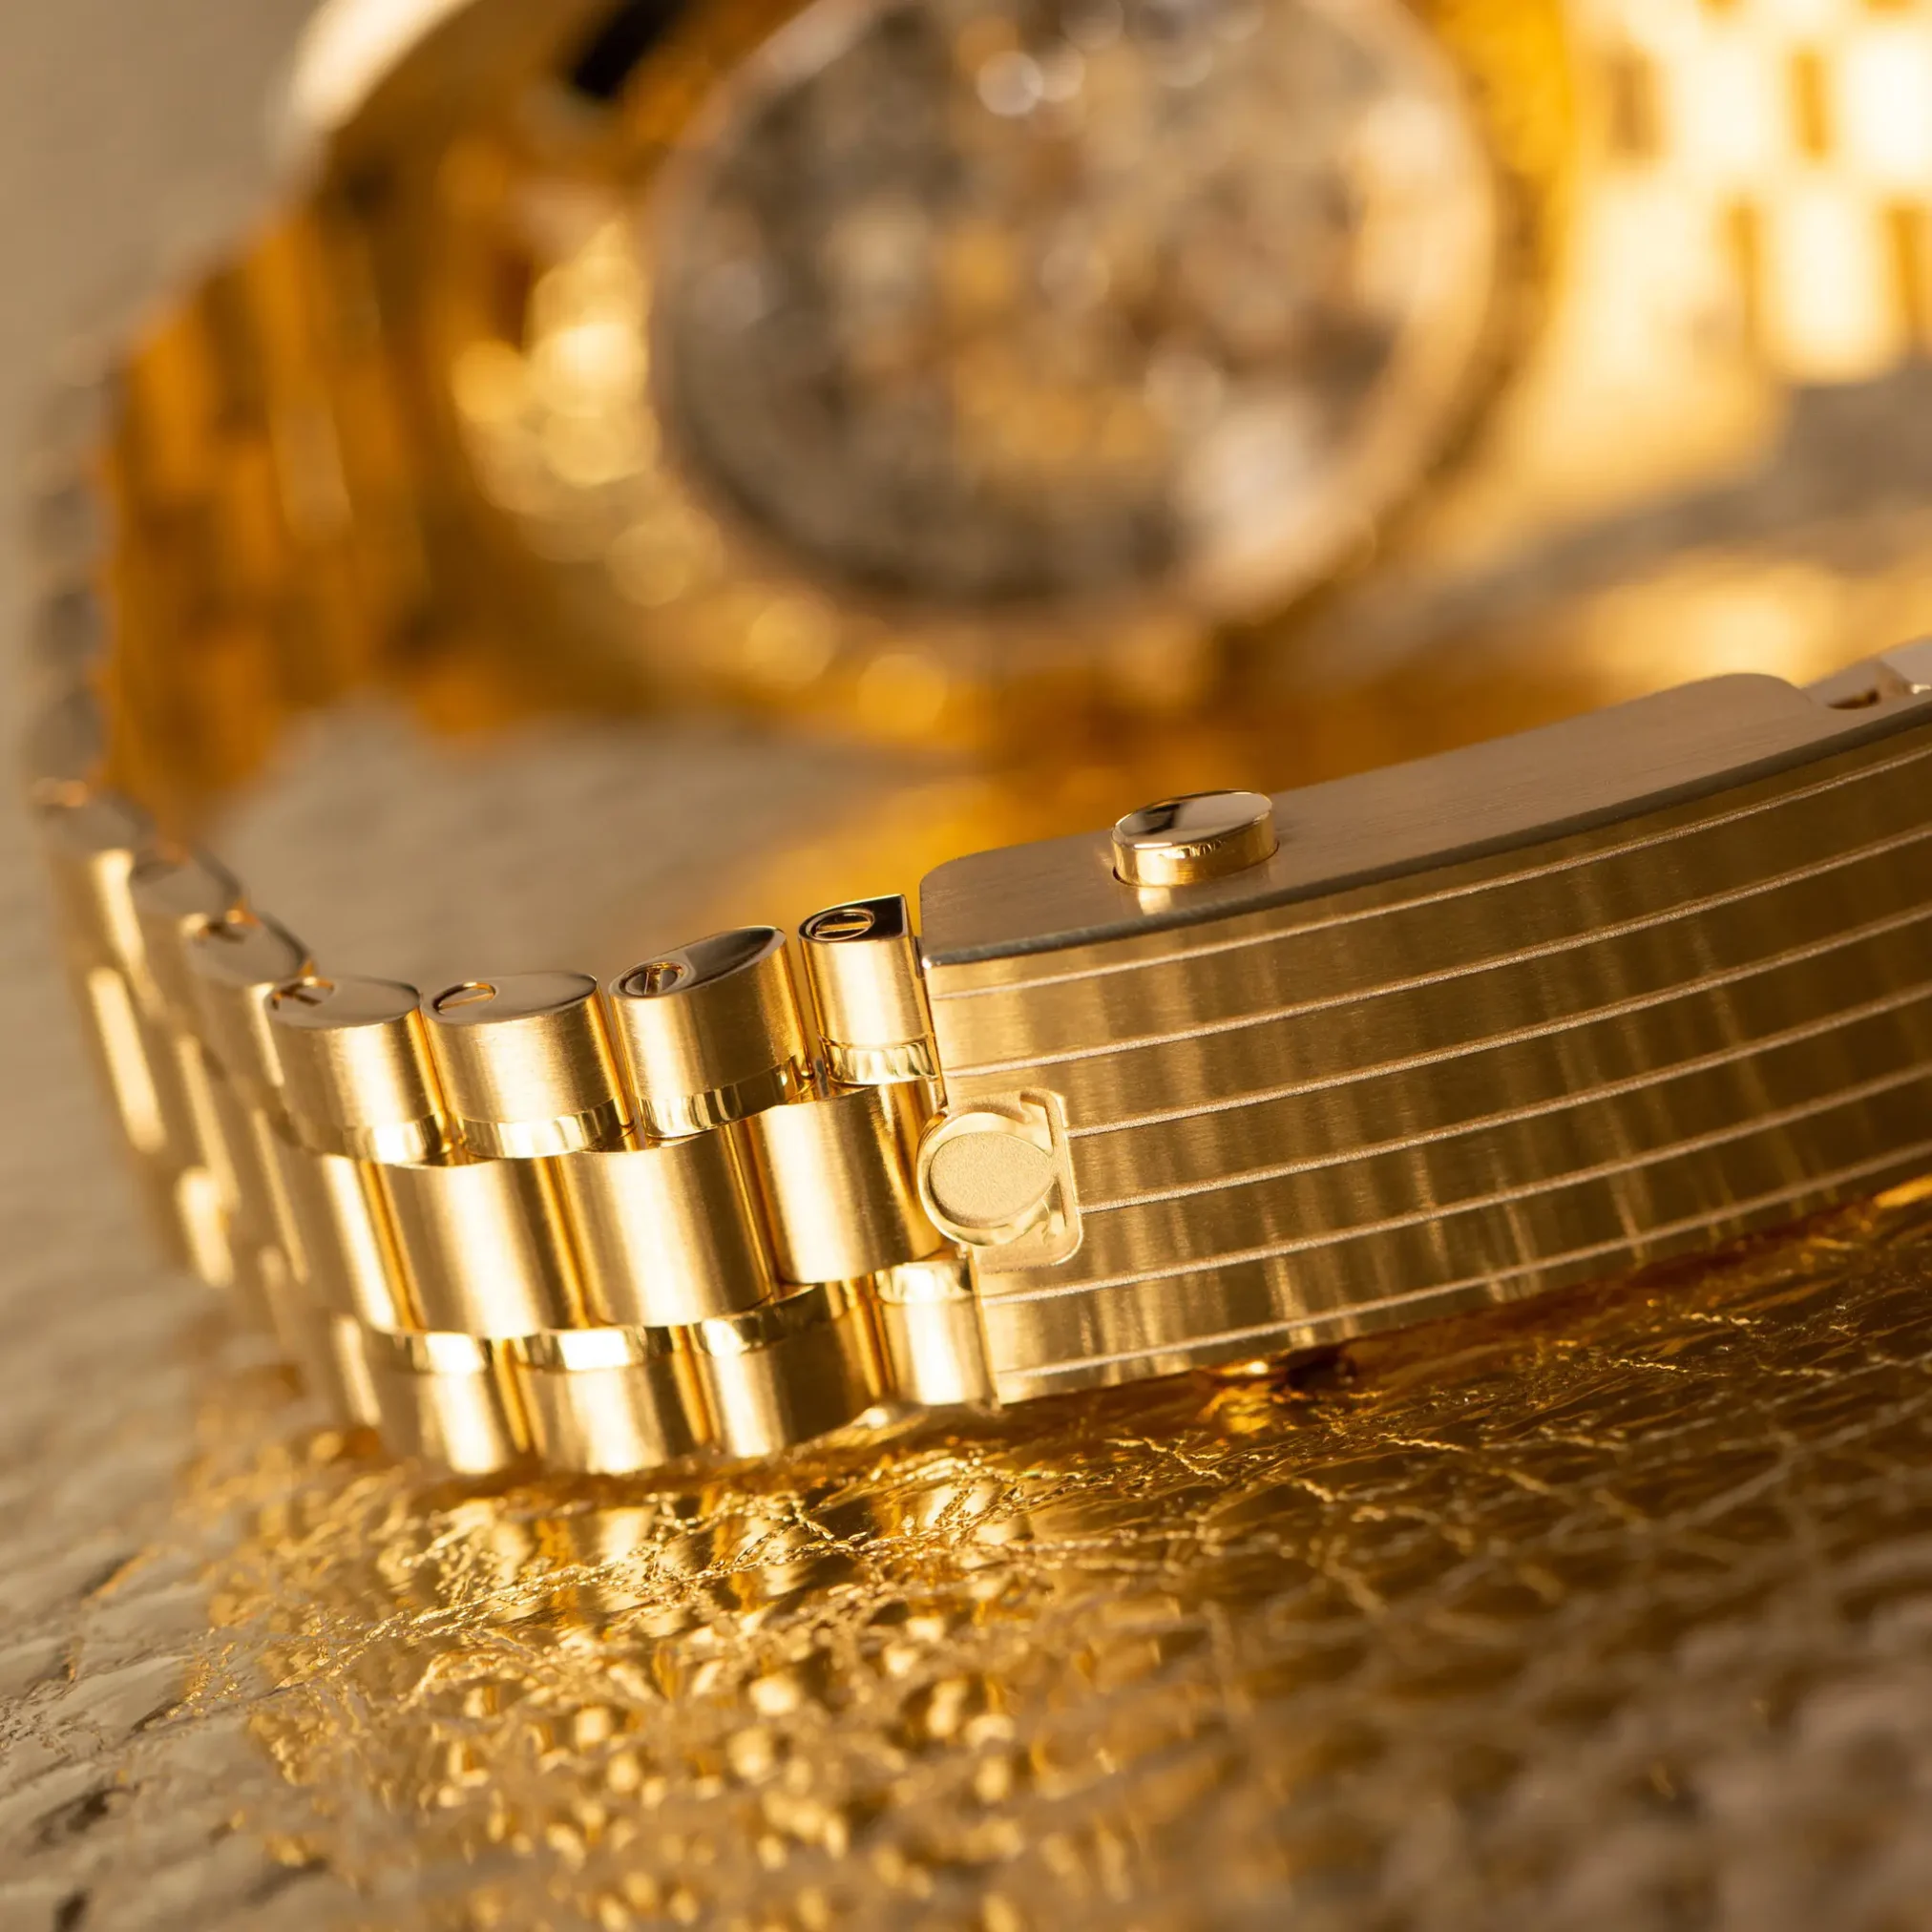 Đồng Hồ Omega Speedmaster Moonwatch Co-Axial Master Chronometer Chronograph 310.60.42.50.10.001 mặt số màu xanh thiết kế lộ cơ.Dây đeo bằng vàng khối.Thân vỏ bằng vàng khối